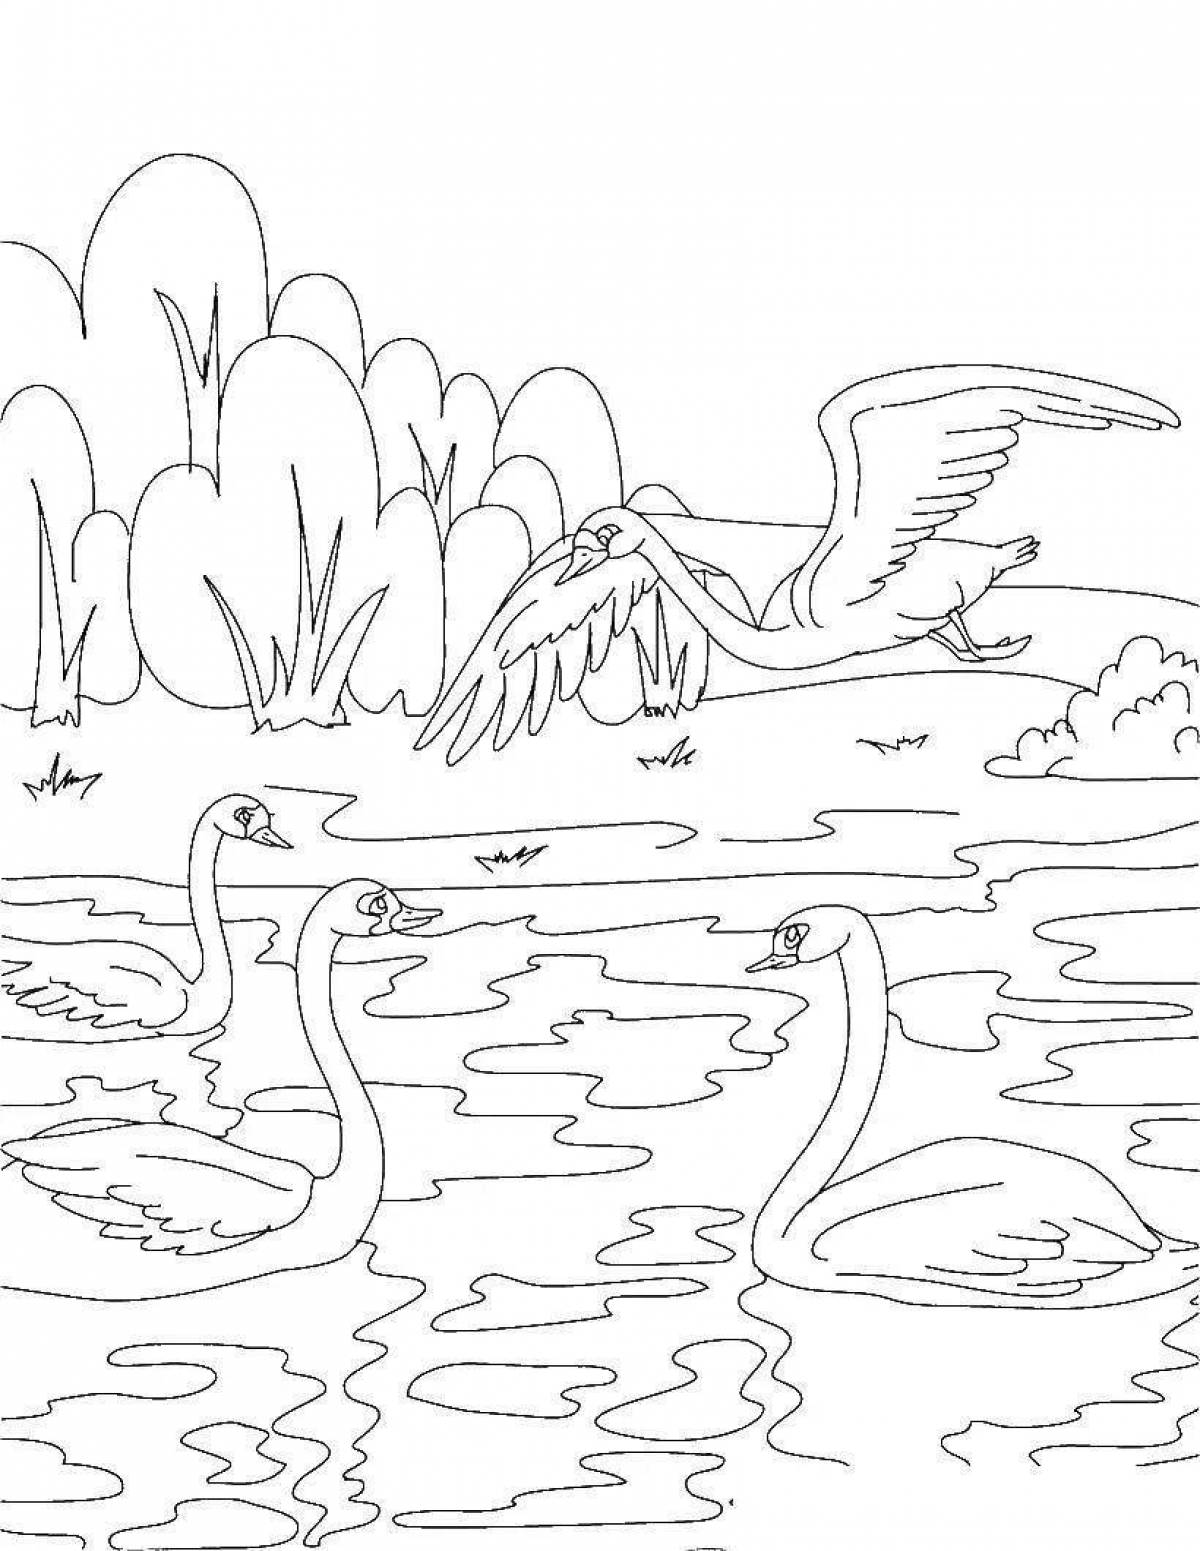 Swan lake bright coloring for juniors